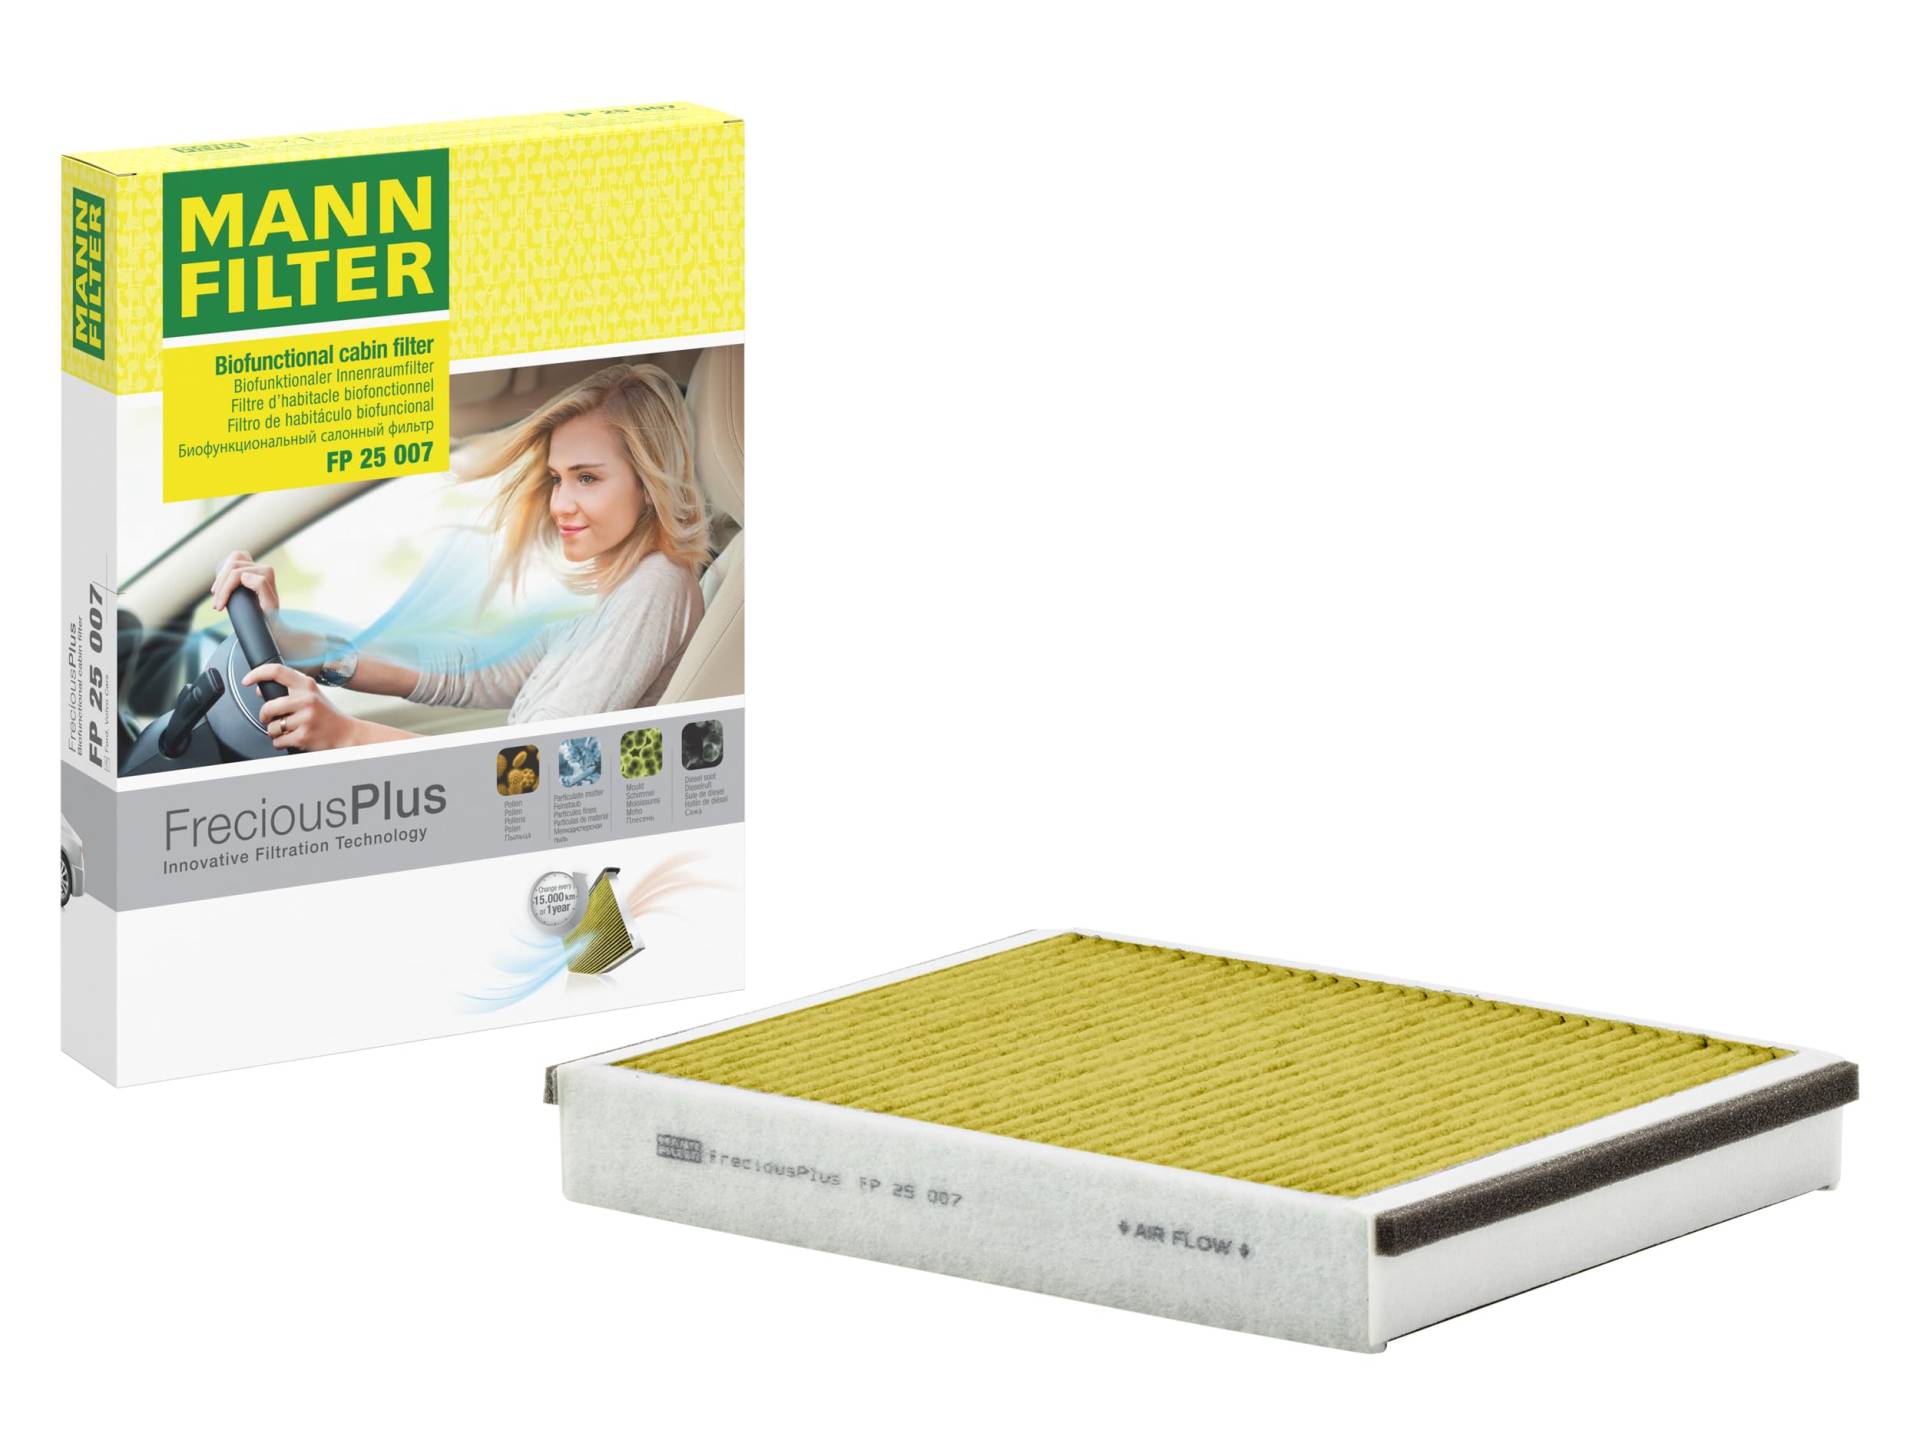 MANN-FILTER FP 25 007 Innenraumfilter – FreciousPlus Biofunktionaler Pollenfilter – Für Transporter von MANN-FILTER